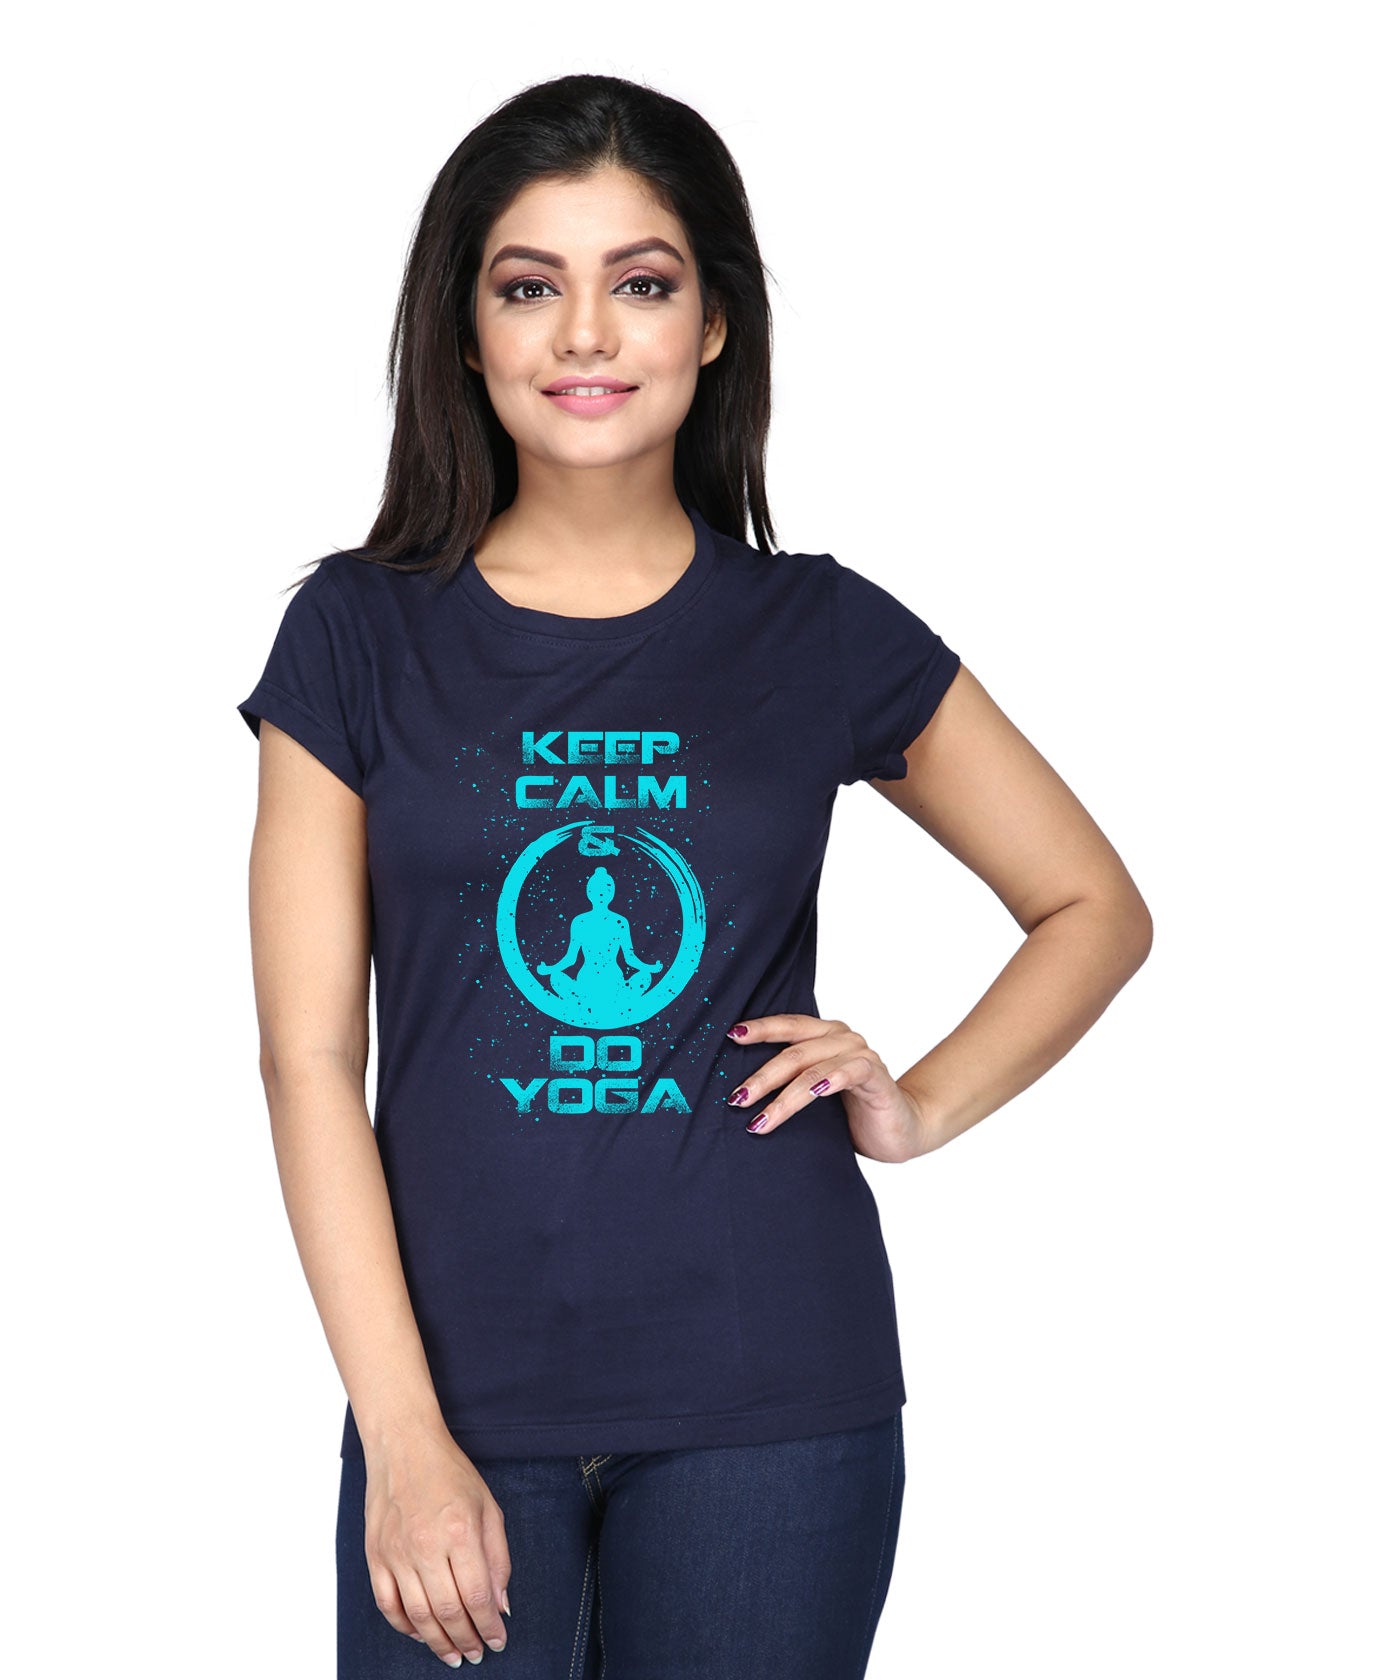 Keep Calm Do Yoga - Premium Round Neck Cotton Tees for Women - Navy Blue